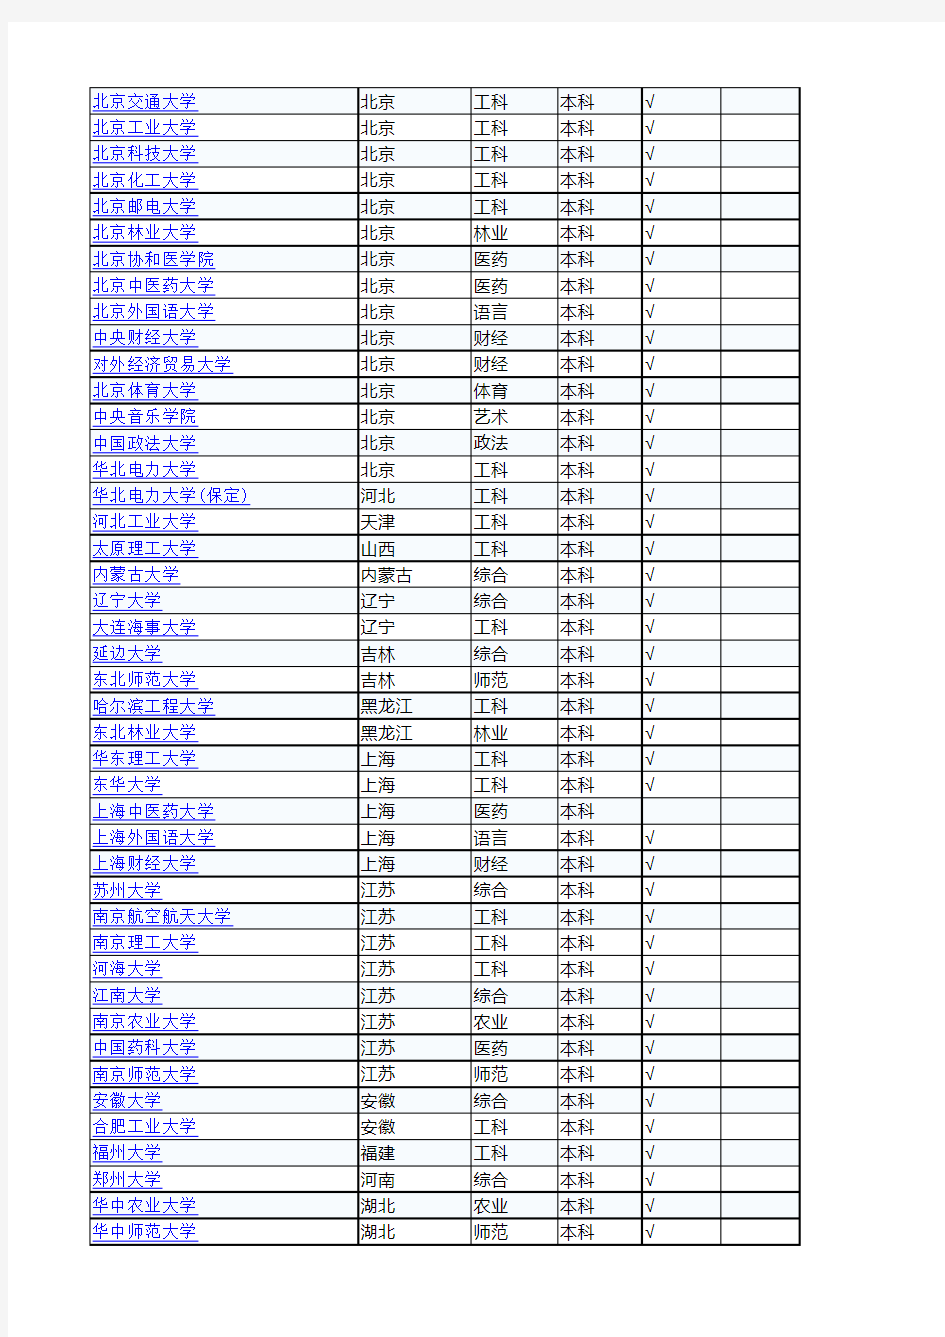 全国各地所有高校名单数据库和 全国所有高校排名 Excel表格